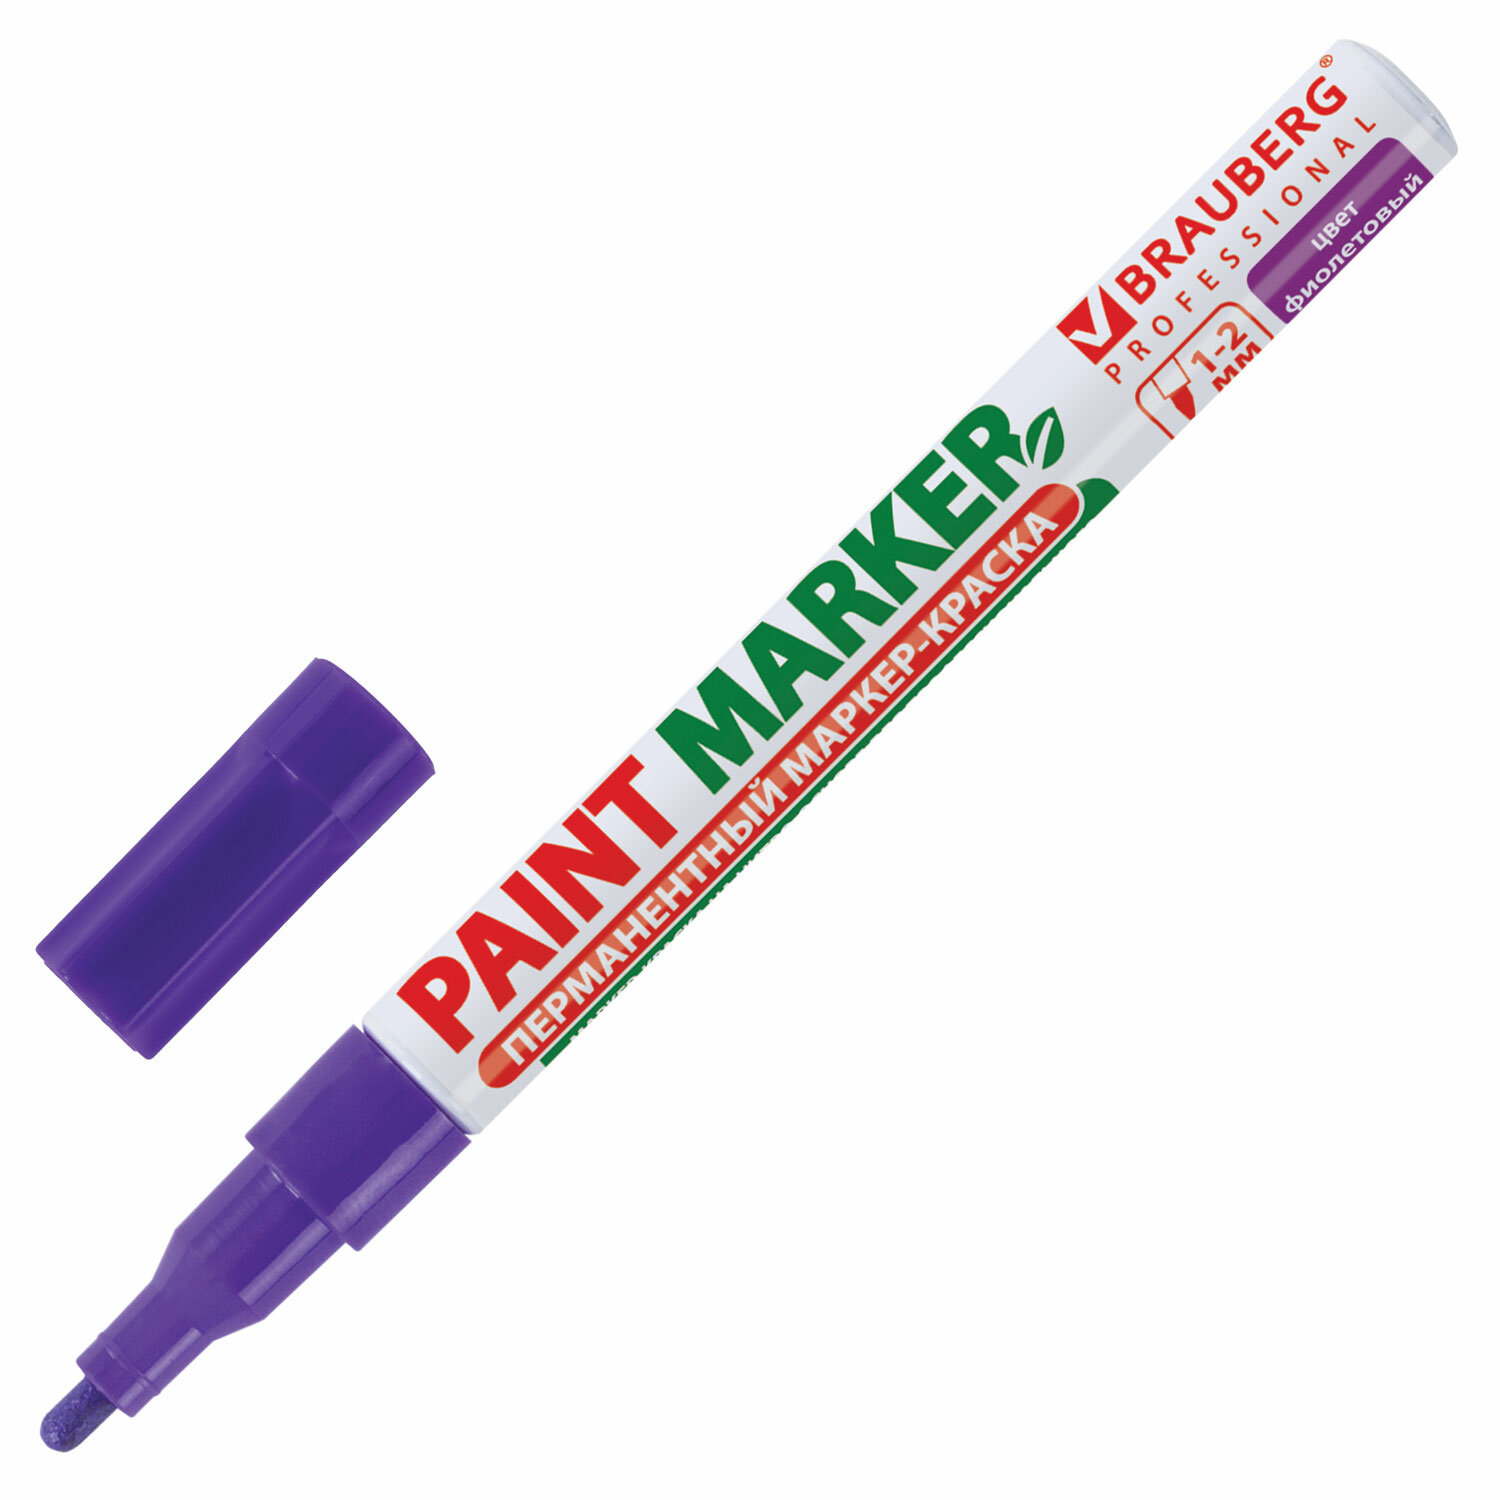 Маркер-краска лаковый Brauberg Professional 150871, 2мм, фиолетовый, 12шт соска пустышка классическая силикон 6мес с колпачком фиолетовый